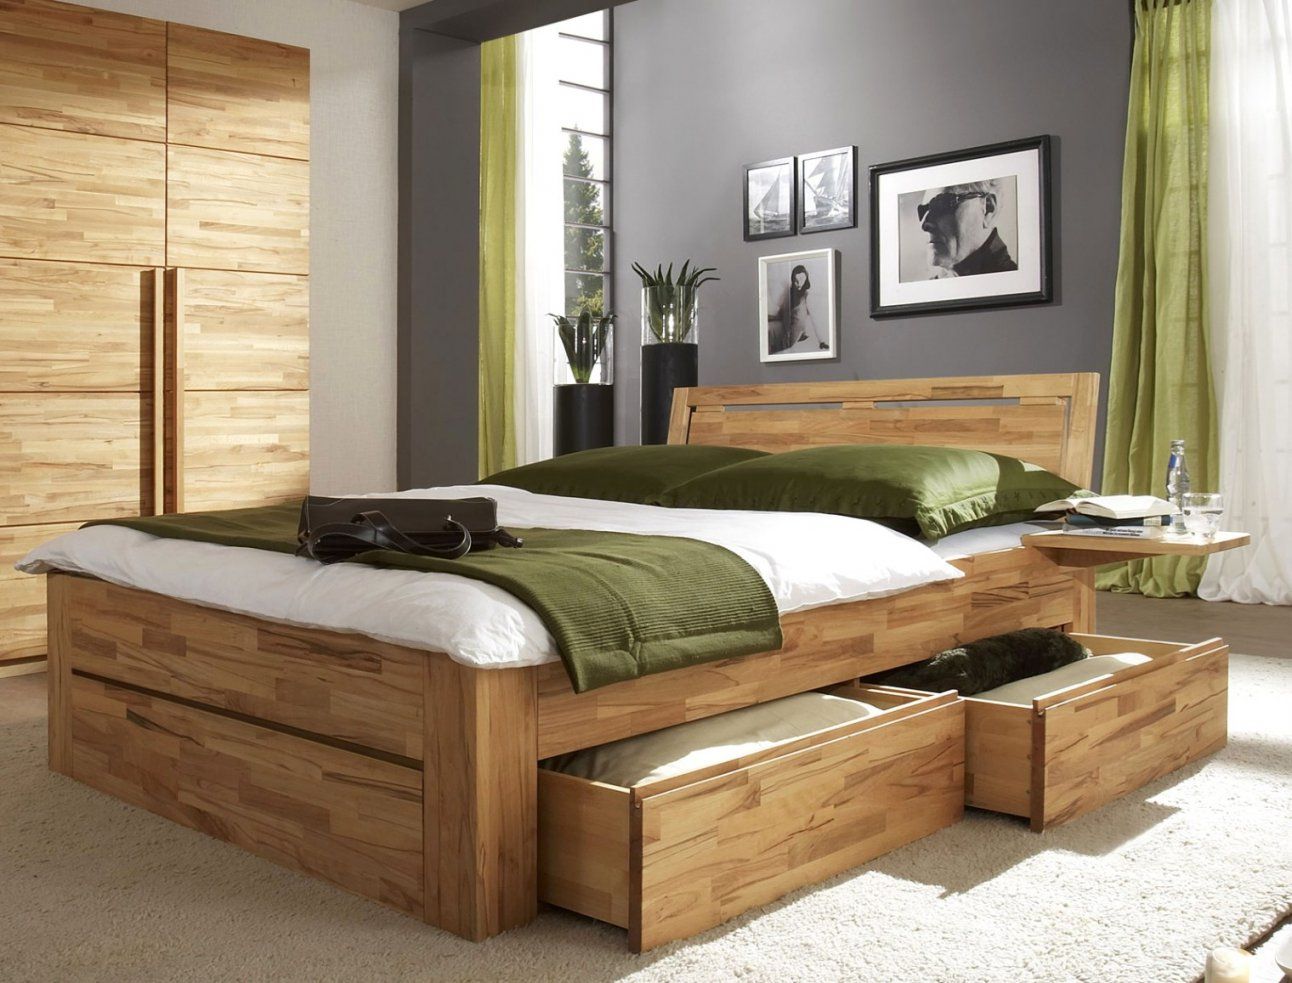 Coole Betten Selber Bauen | Haus Design Ideen